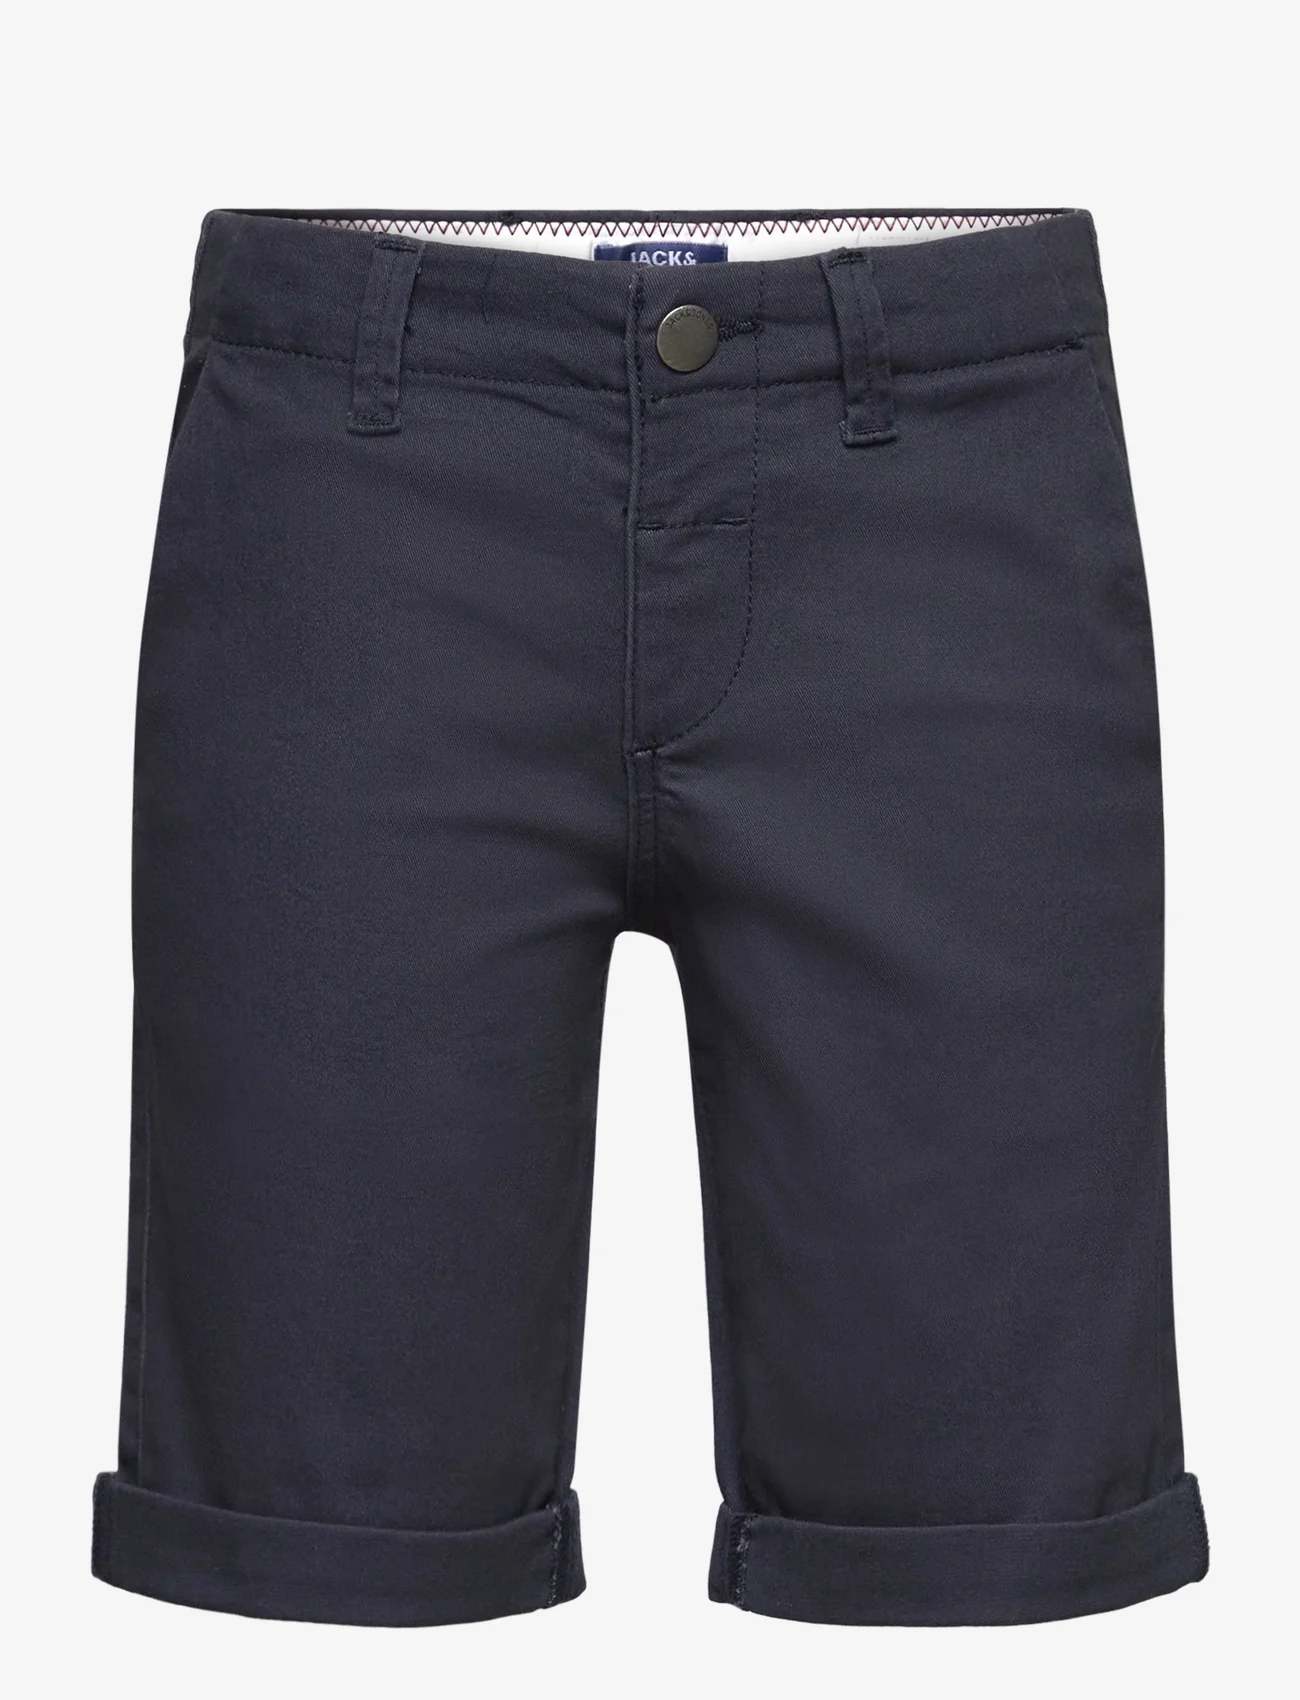 Jack & Jones - JPSTDAVID JJCHINO SHORTS AKM SN MNI - chino shorts - navy blazer - 0